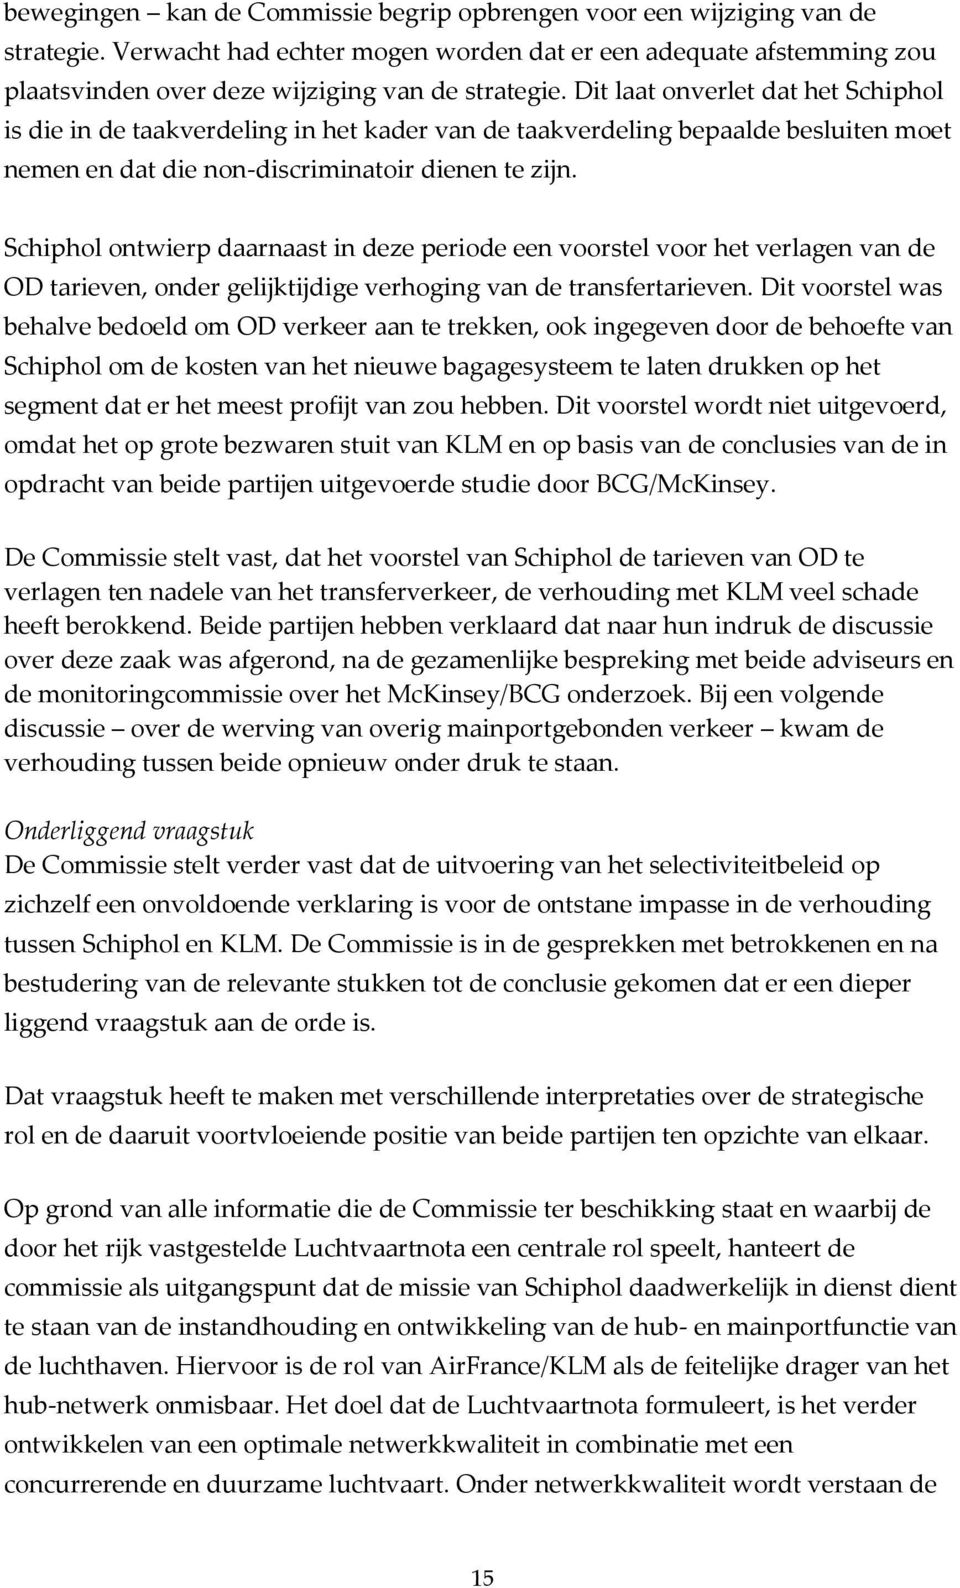 Schiphol ontwierp daarnaast in deze periode een voorstel voor het verlagen van de OD tarieven, onder gelijktijdige verhoging van de transfertarieven.